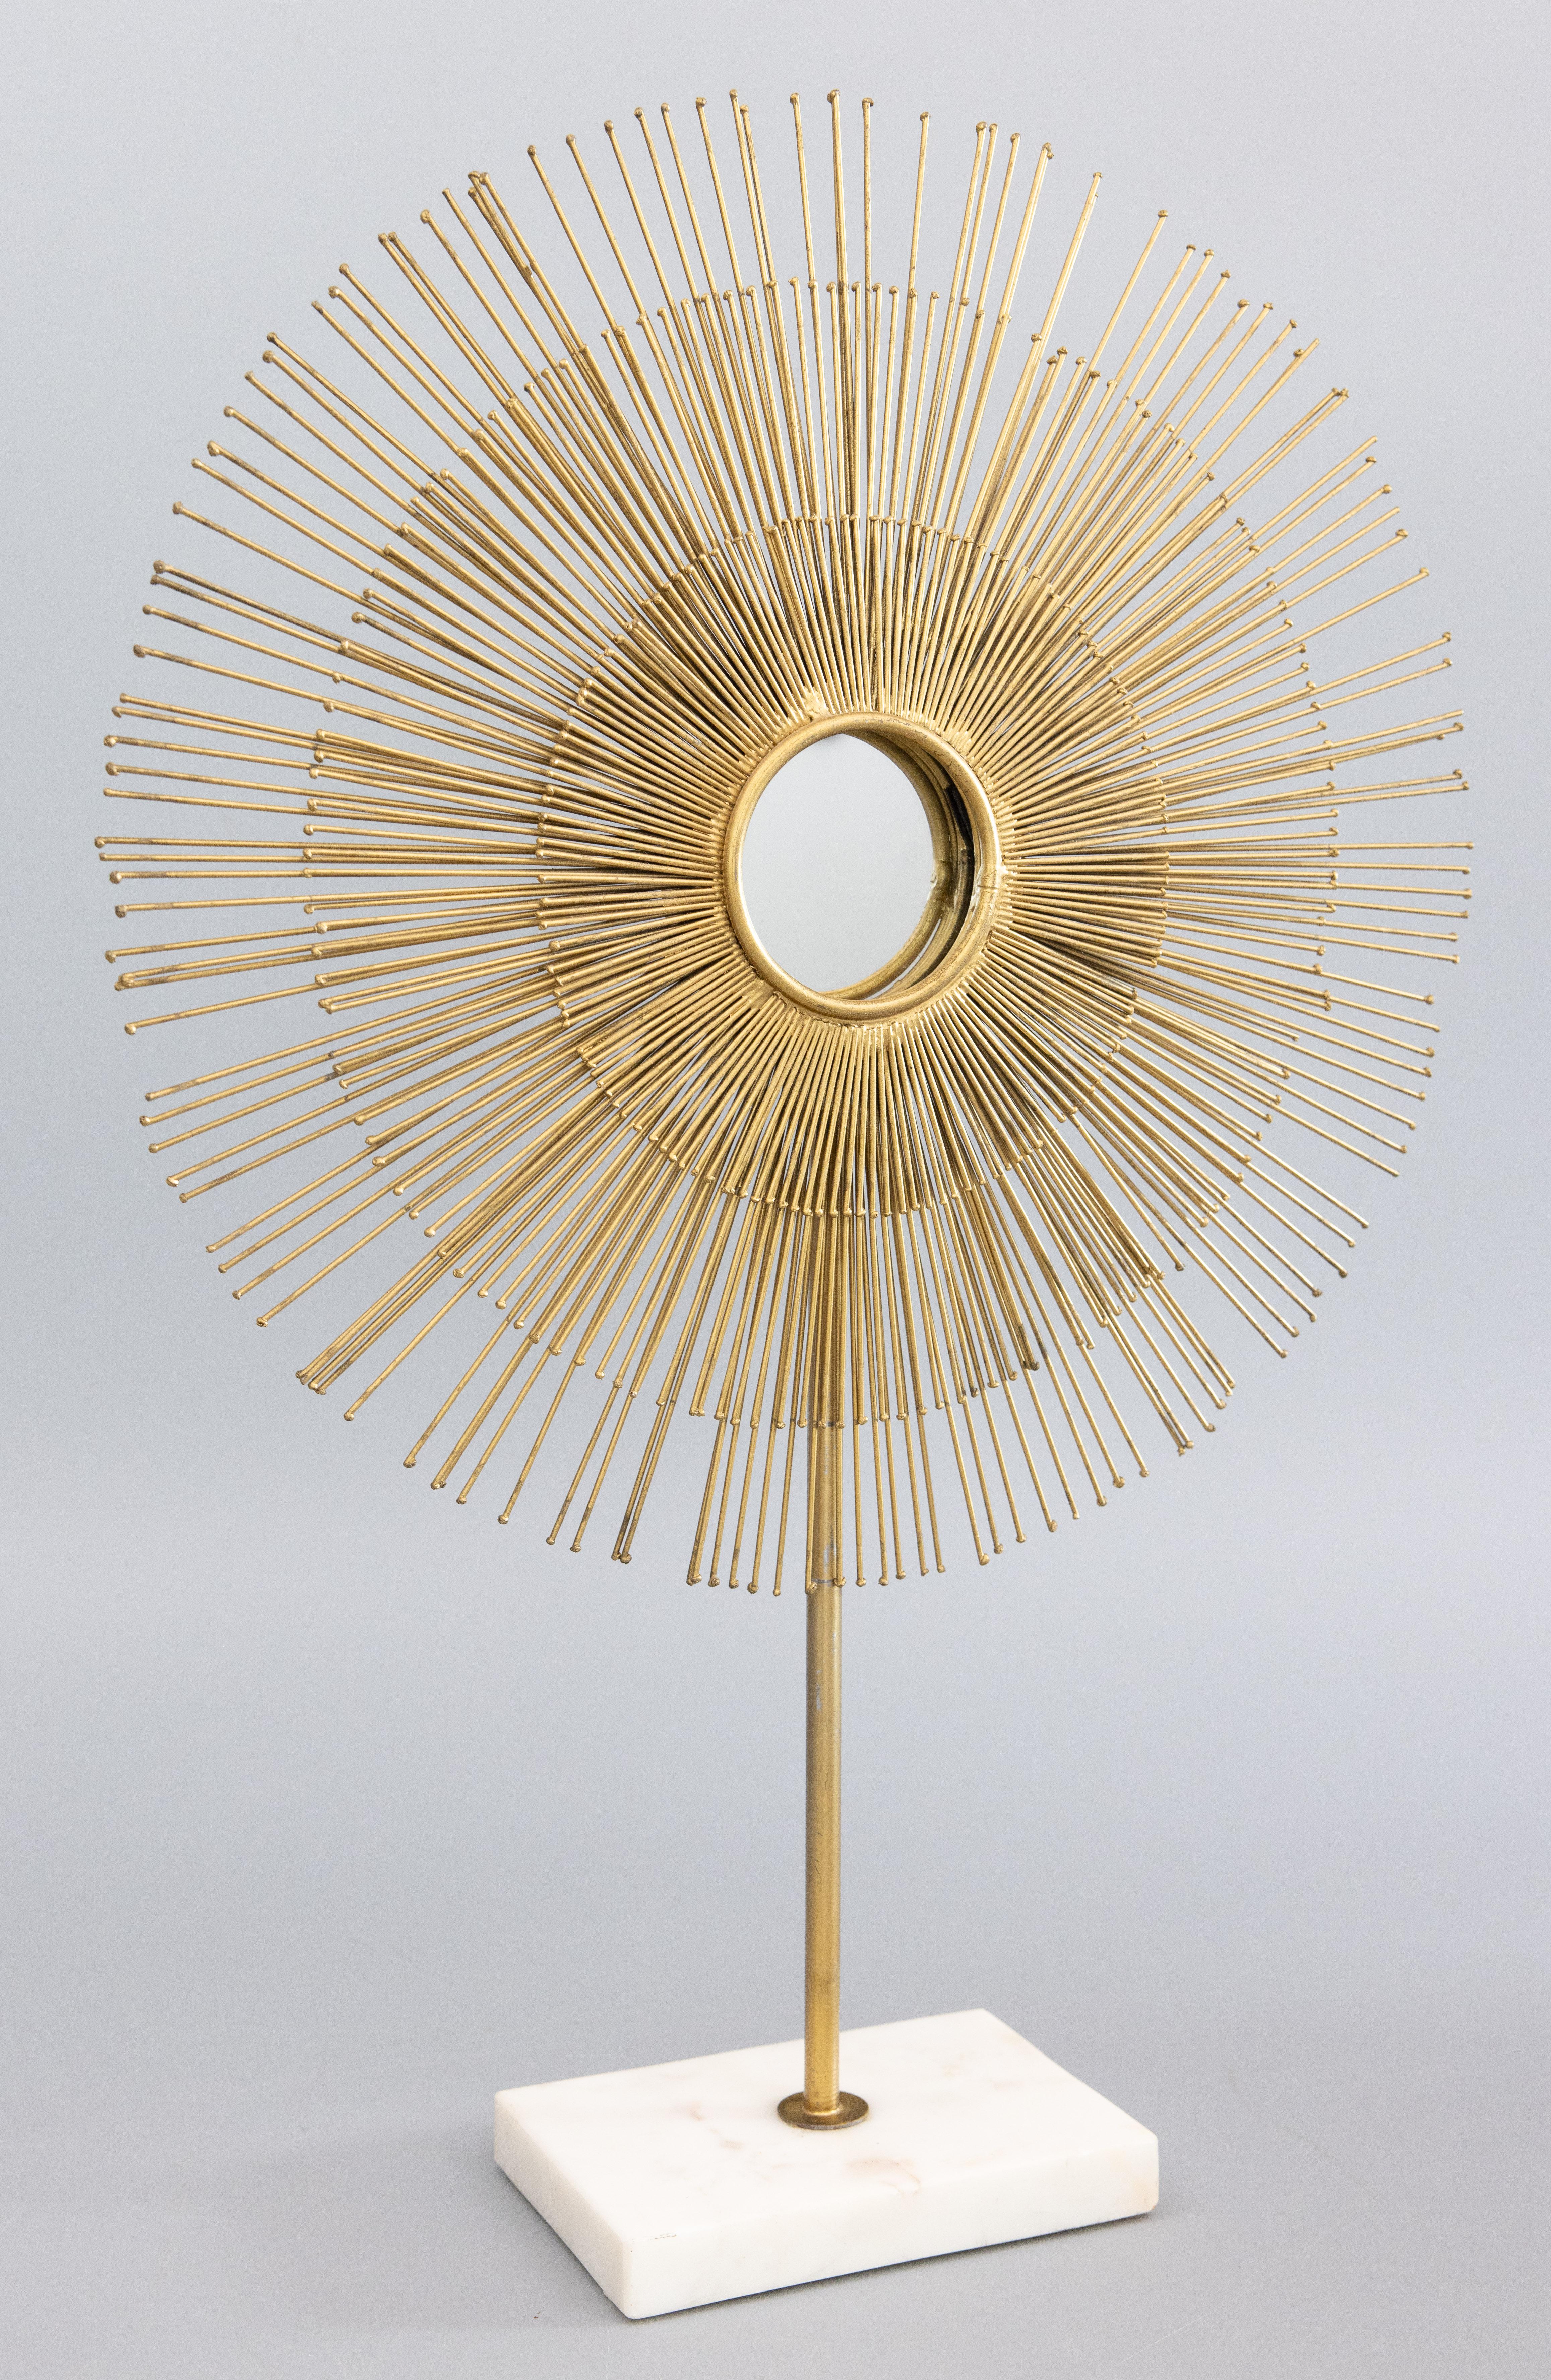 Ein fabelhaftes Vintage Mitte des 20. Jahrhunderts Französisch Gold vergoldetem Metall sunburst starburst Tischplatte Spiegel Skulptur auf einem weißen Marmorsockel. Ein stilvoller Akzent für jeden Raum!

Der Durchmesser des Sunburst-Spiegels ist 15